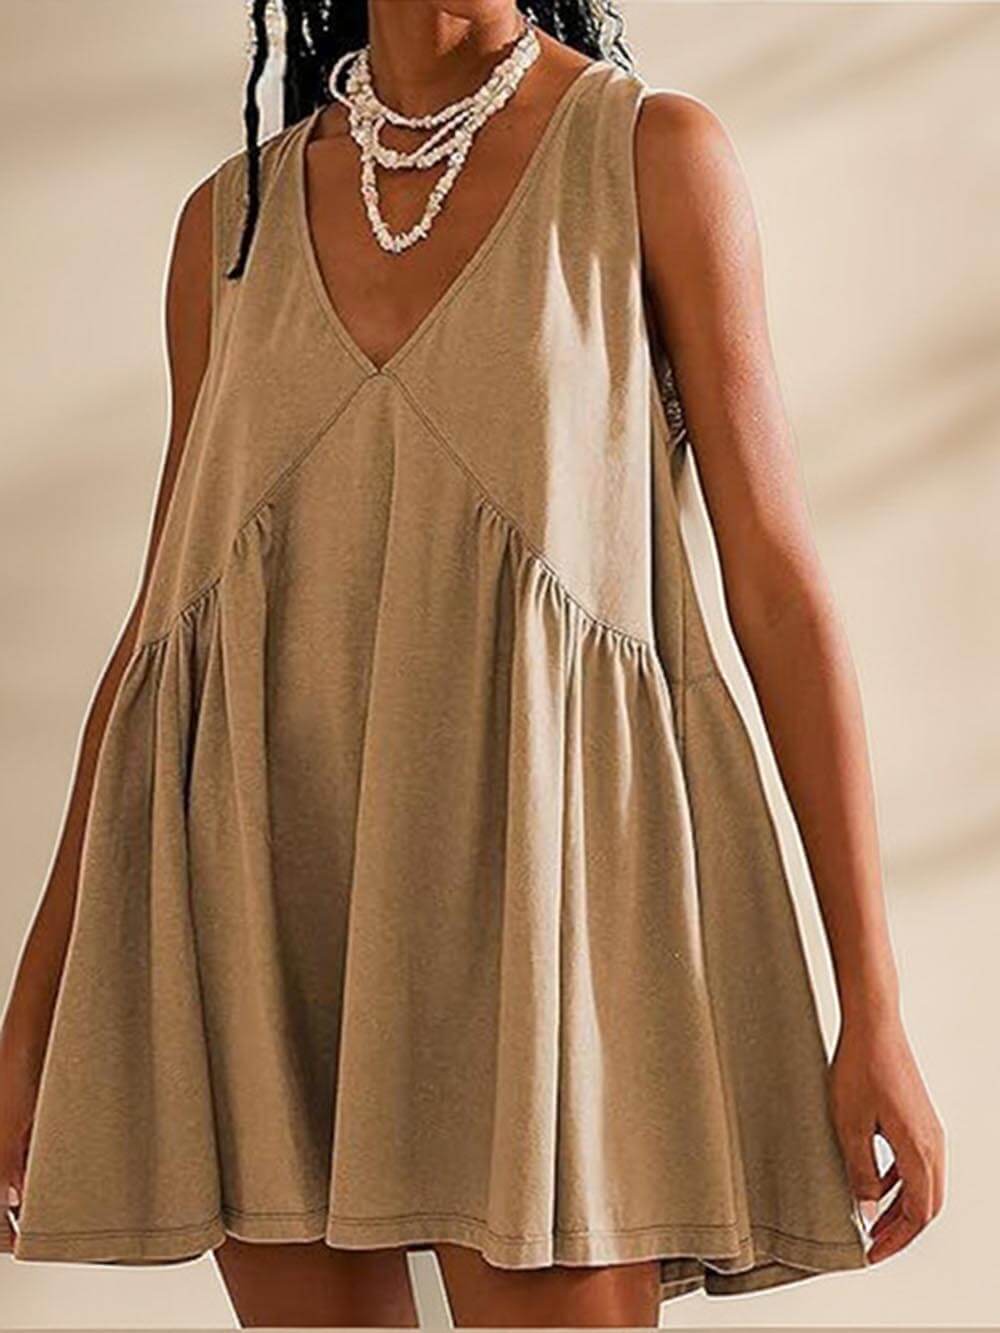 Sukienka mini z głębokim dekoltem w kształcie litery V i szerokimi ramiączkami